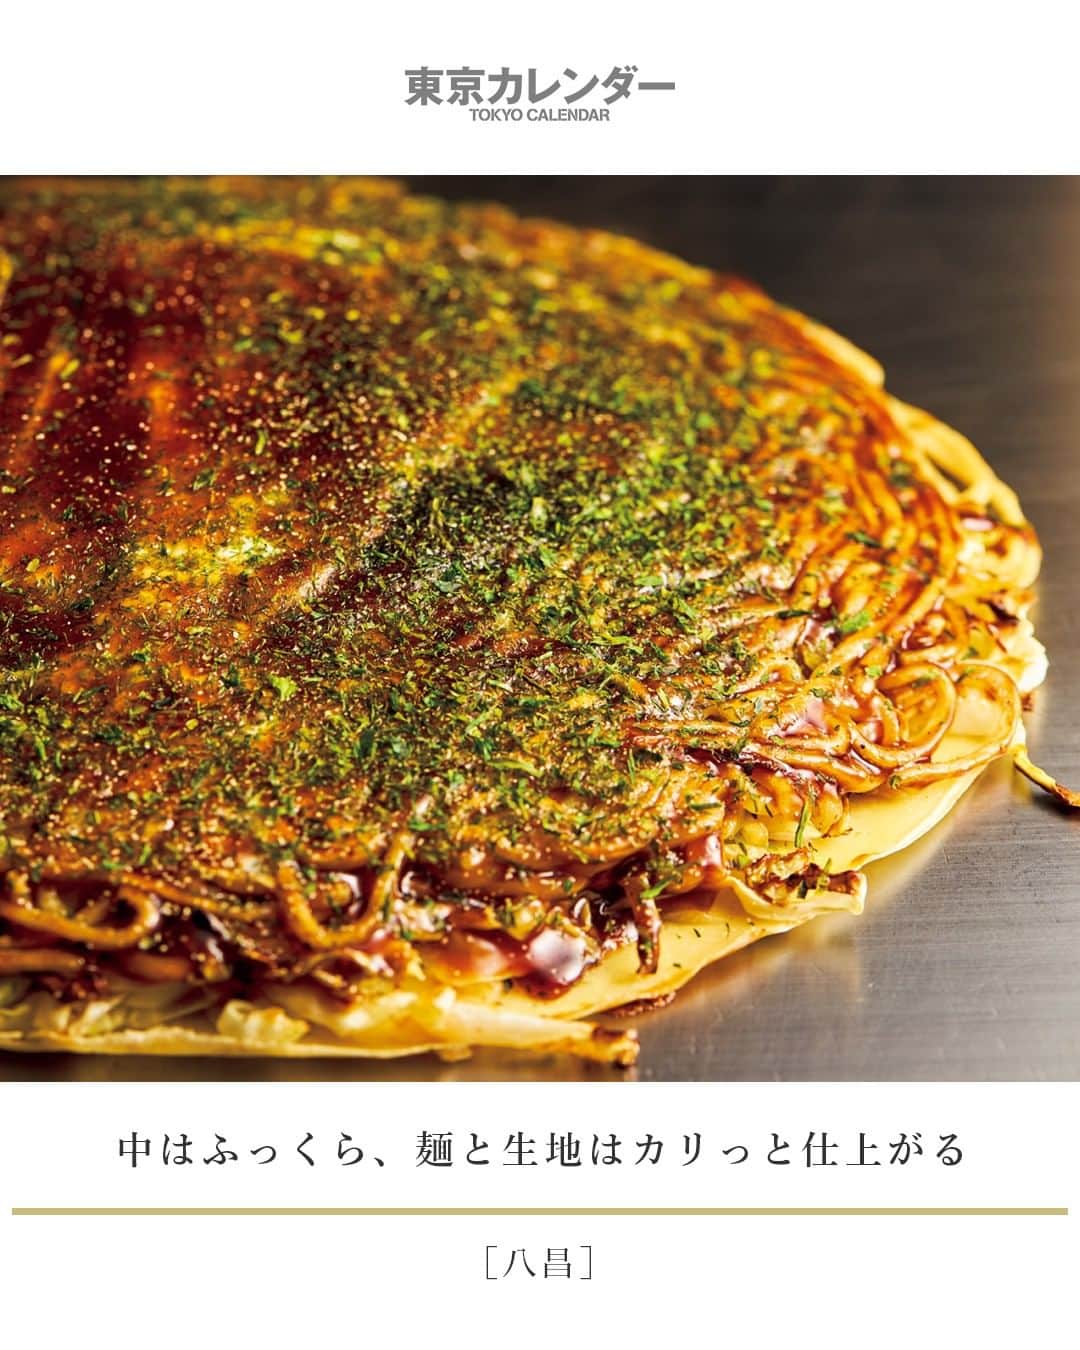 東京カレンダーさんのインスタグラム写真 - (東京カレンダーInstagram)「生地を広げるところから、 20分かけて丁寧に焼き上げるお好み焼き。⠀⠀⠀⠀⠀⠀⠀⠀⠀ この焼き時間は生地の薄い広島風としてはかなり長いが、 その分だけ中はふっくら、 麺と生地はカリッと仕上がる。卵は半熟で、 切り分けると黄身がとろりと流れる。 ⠀⠀⠀⠀⠀⠀⠀⠀⠀ 「お好み焼き肉玉そば入り」⠀⠀⠀⠀⠀⠀⠀⠀⠀ （写真 ¥900)⠀⠀⠀⠀⠀⠀⠀⠀⠀ ⠀⠀⠀⠀⠀⠀⠀⠀⠀ ★その他のメニューや、店内の様子、詳細は⠀⠀⠀⠀⠀⠀⠀⠀⠀⠀⠀⠀⠀ 『月刊誌　東京カレンダー2020 3月号』内の『世田谷の話題店』にて⠀⠀⠀⠀⠀⠀⠀⠀⠀ ⠀⠀⠀⠀⠀⠀⠀⠀⠀ ★この企画について⠀⠀⠀⠀⠀⠀⠀⠀⠀ 【 #世田谷の話題店 】⠀⠀⠀⠀⠀⠀⠀⠀⠀ 近所のいい店、あなたはいくつ知っている？⠀⠀⠀⠀⠀⠀⠀⠀⠀⠀⠀⠀⠀⠀⠀⠀ 広大な世田谷の様々なエリアから、新店、人気店をピックアップ！今、世田谷区を賑わす話題店を紹介する。⠀⠀⠀⠀⠀⠀⠀⠀⠀ ⠀⠀⠀⠀⠀⠀⠀⠀⠀ 【今回ご紹介したレストラン情報】⠀⠀⠀⠀⠀⠀⠀⠀⠀ 店名▷ #八昌⠀⠀⠀⠀⠀⠀⠀⠀⠀ エリア▷ #世田谷区 #経堂 #小田急線⠀⠀⠀⠀⠀⠀⠀⠀⠀ 電話▷03-3428-8437⠀⠀⠀⠀⠀⠀⠀⠀⠀ 住所▷世田谷区経堂1−21−18 原田ビル2F⠀⠀⠀⠀⠀⠀⠀⠀⠀ ⠀⠀⠀⠀⠀⠀⠀⠀⠀ ⠀⠀⠀⠀⠀⠀⠀⠀⠀ #東京カレンダー #tokyocalendar #東カレ #話題の店 #東京グルメ #コスパ #有名店 #人気店 #牛すじ #煮込み#日本美食 #東京美食 #tokyofood #tokyoeats #japaneats #経堂グルメ #小田急線グルメ #世田谷グルメ#話題の店 #映え料理 #飲み仲間」1月27日 21時30分 - tokyocalendar